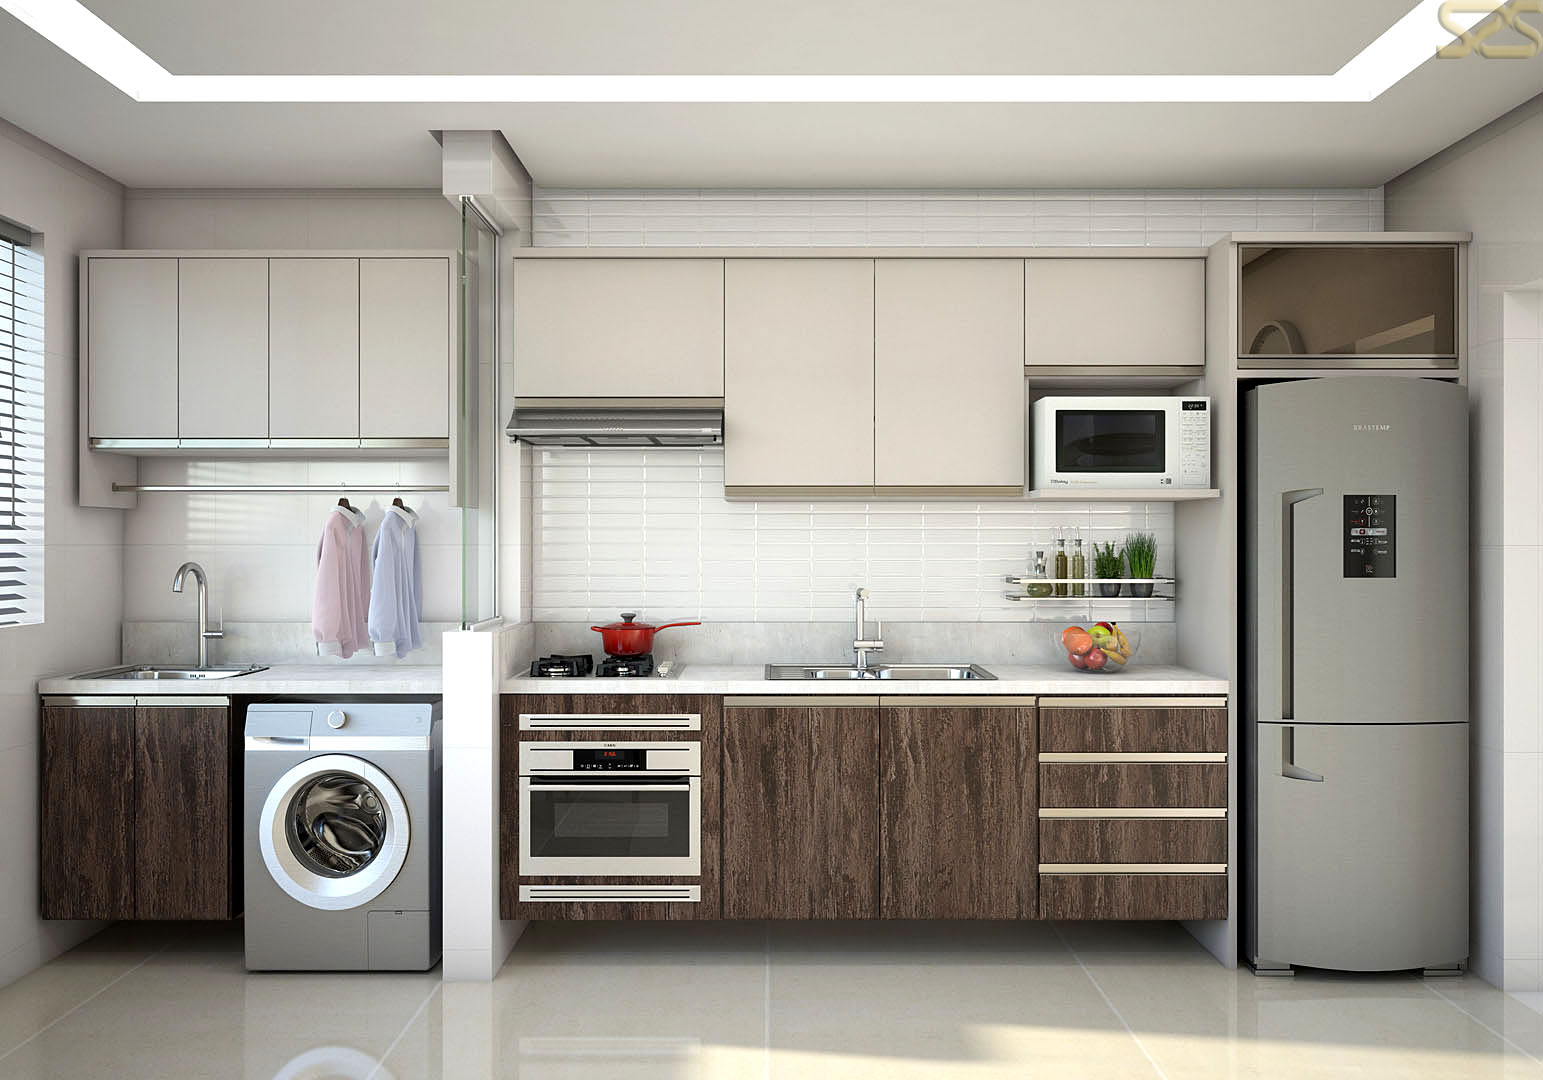 Cozinha compacta com lavanderia da Celmobile em imagem publicitária produzida pelo Studio 25